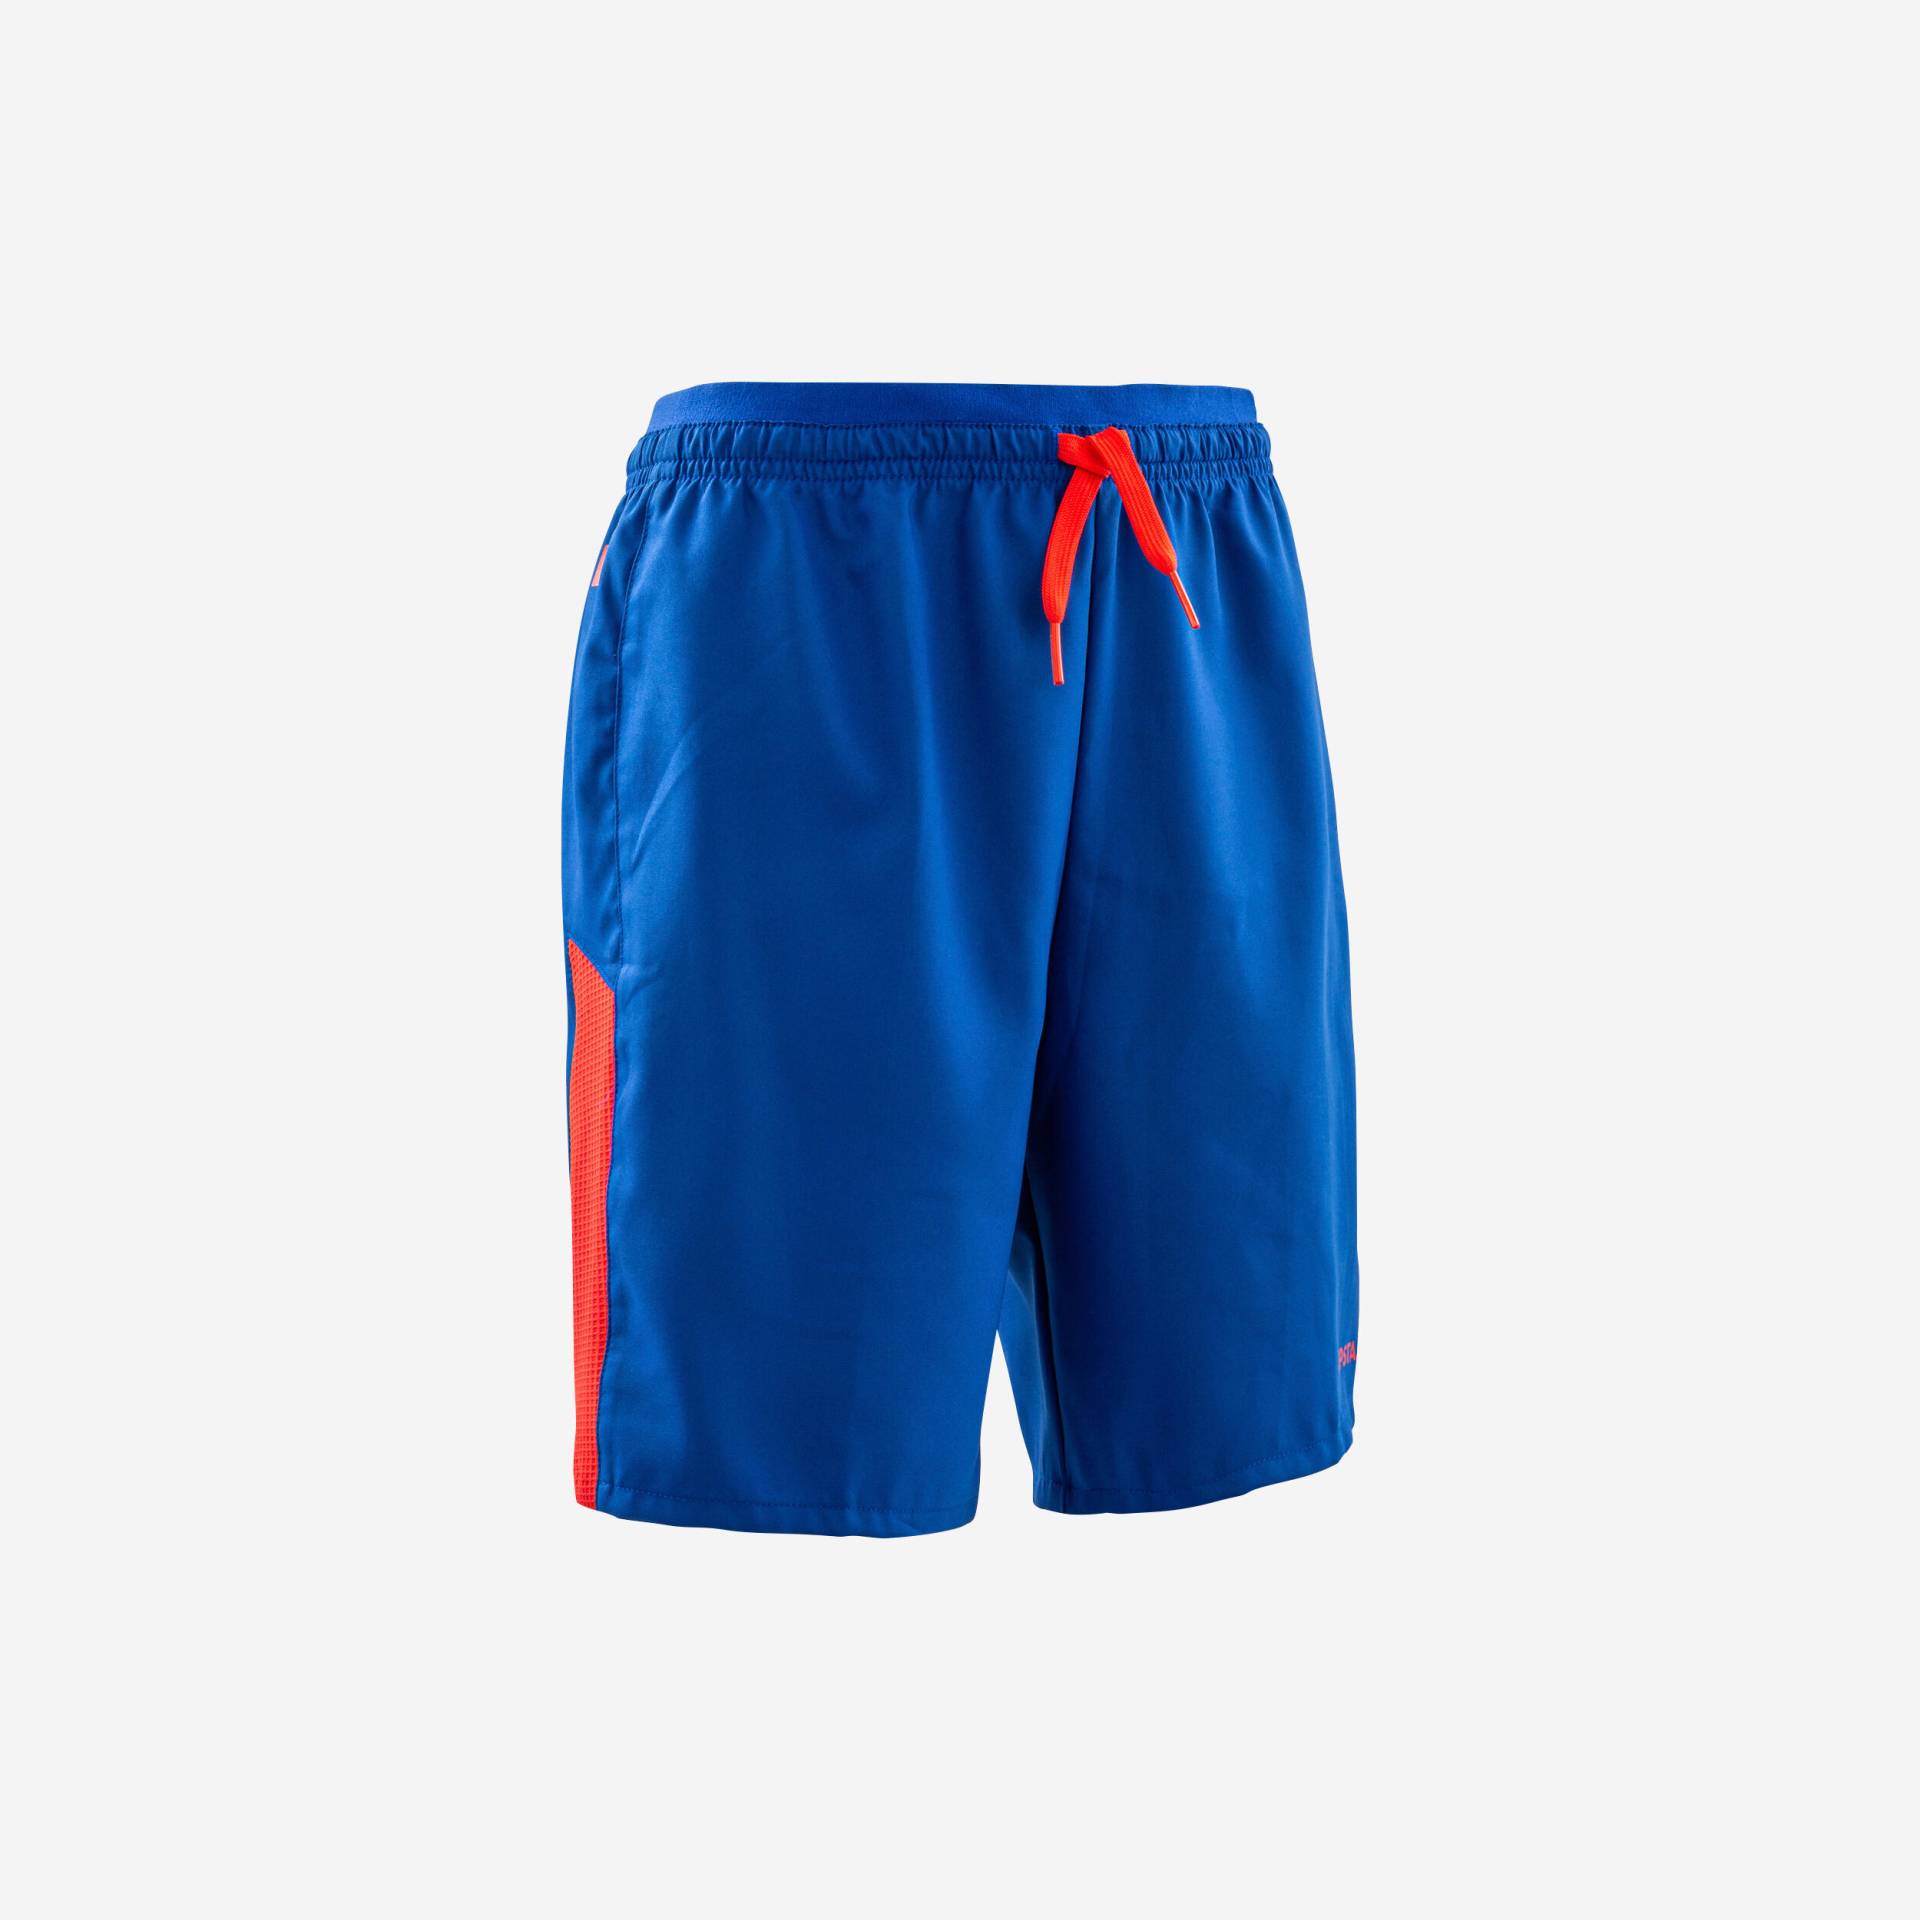 Kinder Fussball Shorts - Viralto Axton blau/orange von KIPSTA